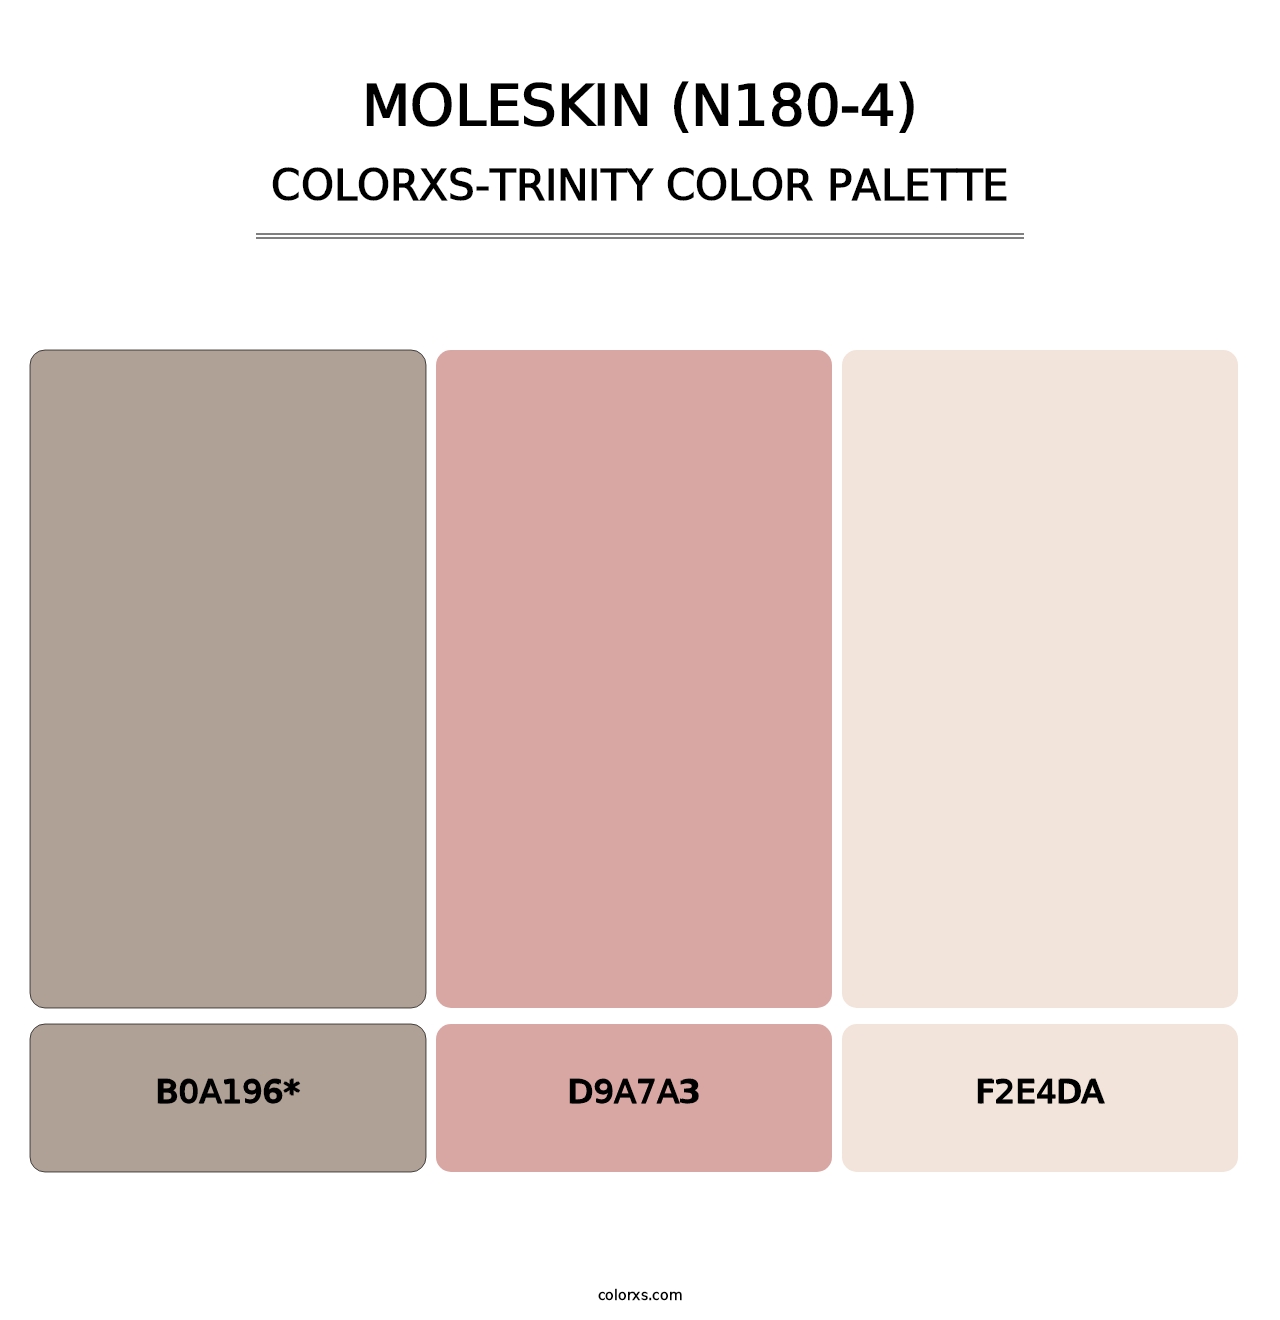 Moleskin (N180-4) - Colorxs Trinity Palette